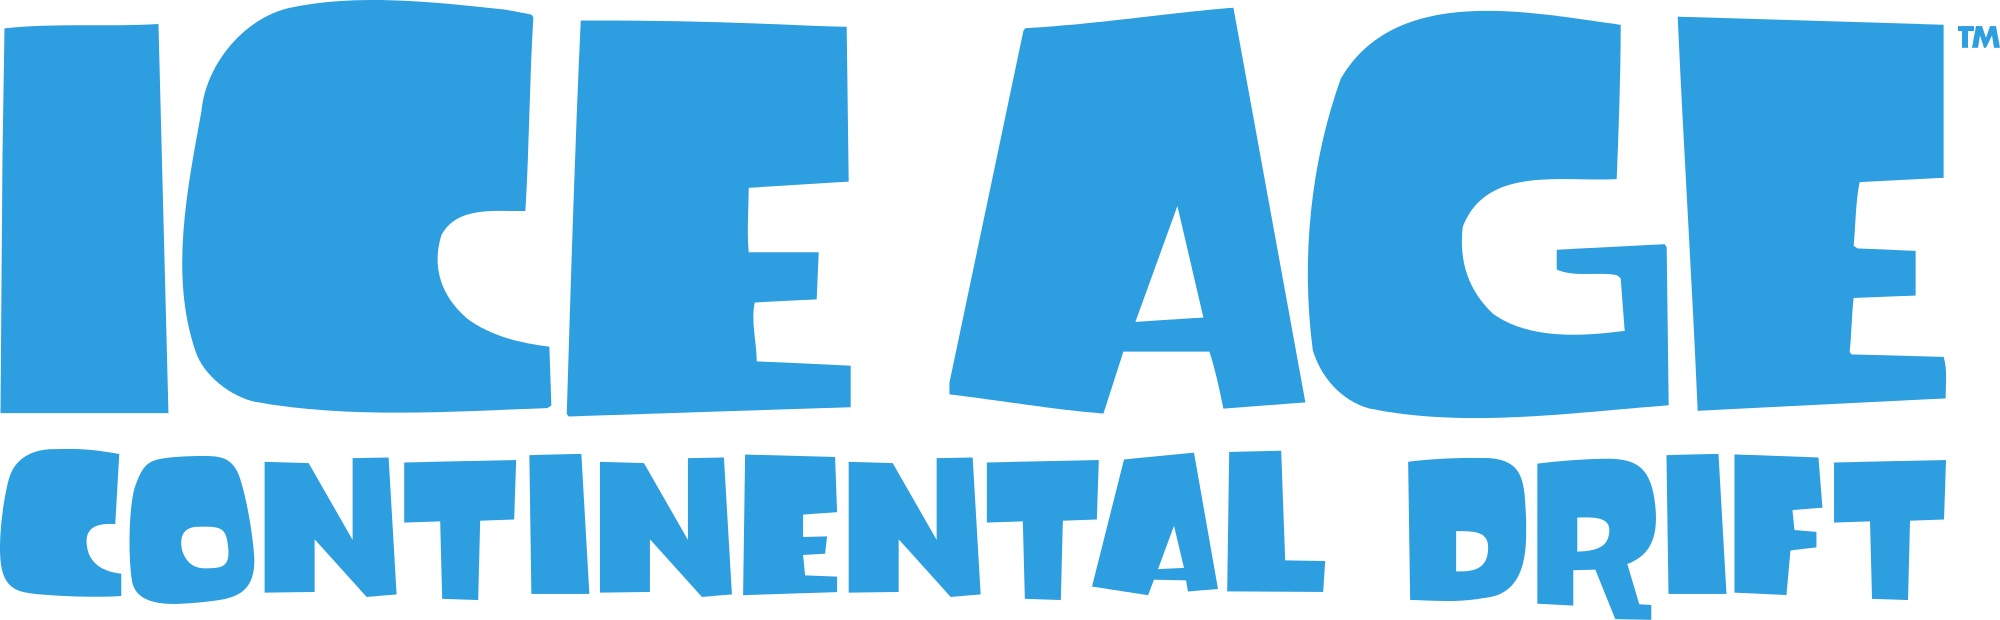 Imagens do logotipo da era do gelo